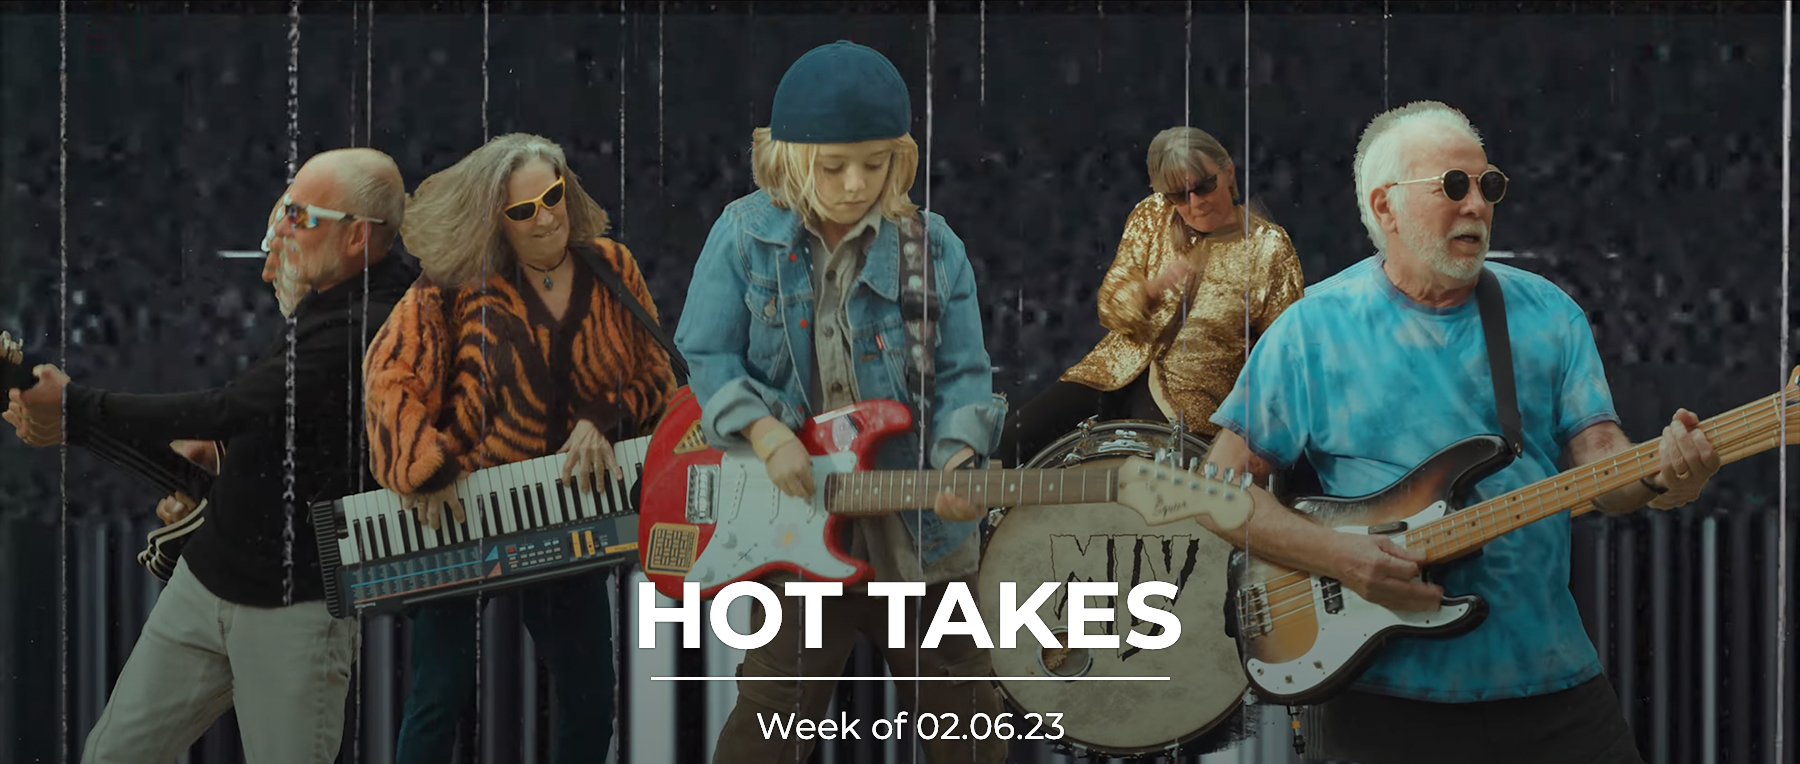 HotTakes | Week of 02.06.23